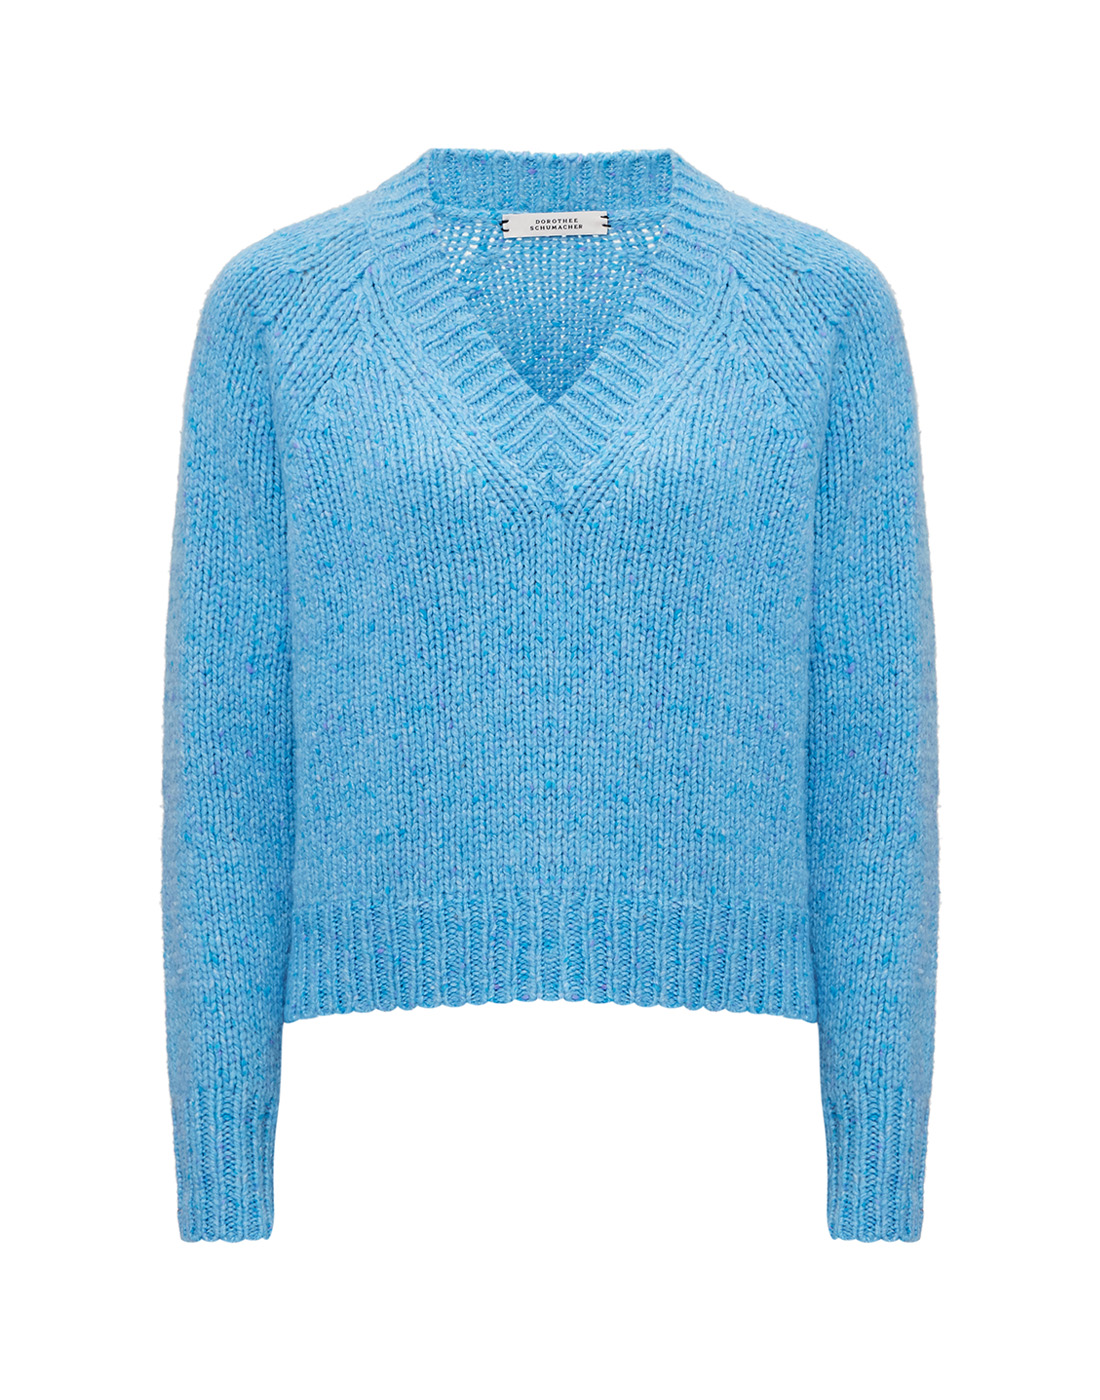 Женский голубой кашемировый пуловер Dorothee Schumacher S814401/805-1